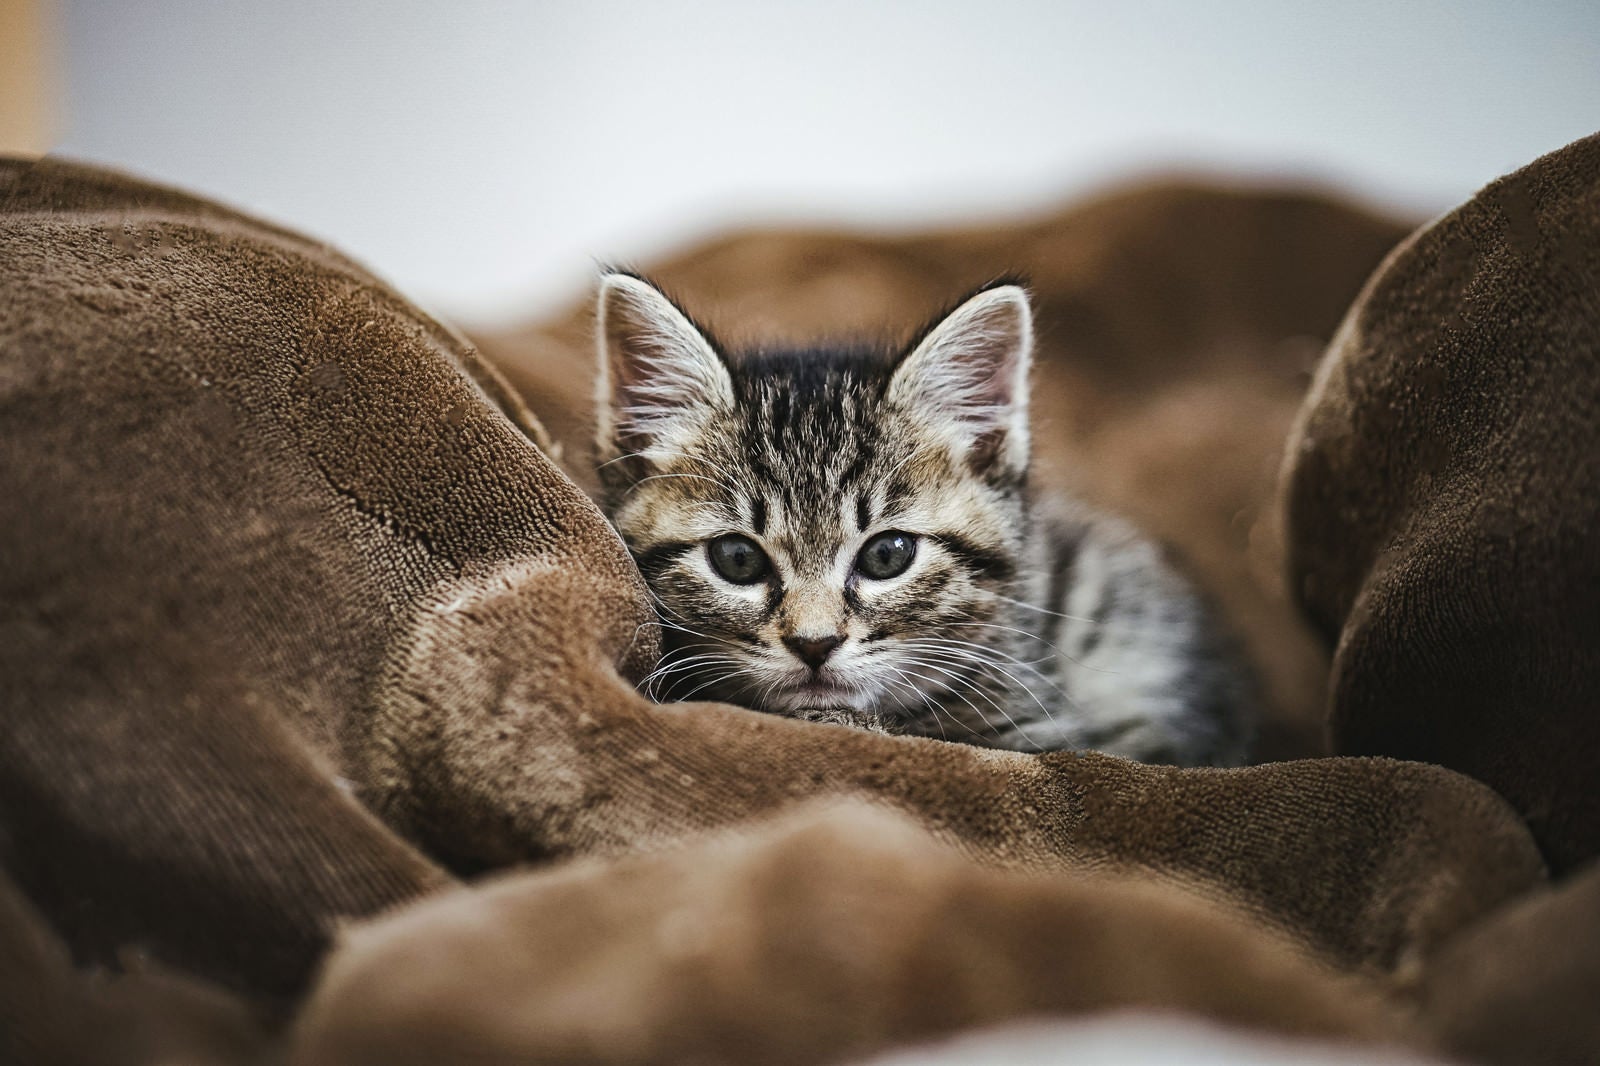 「毛布でしょんぼり子猫」の写真